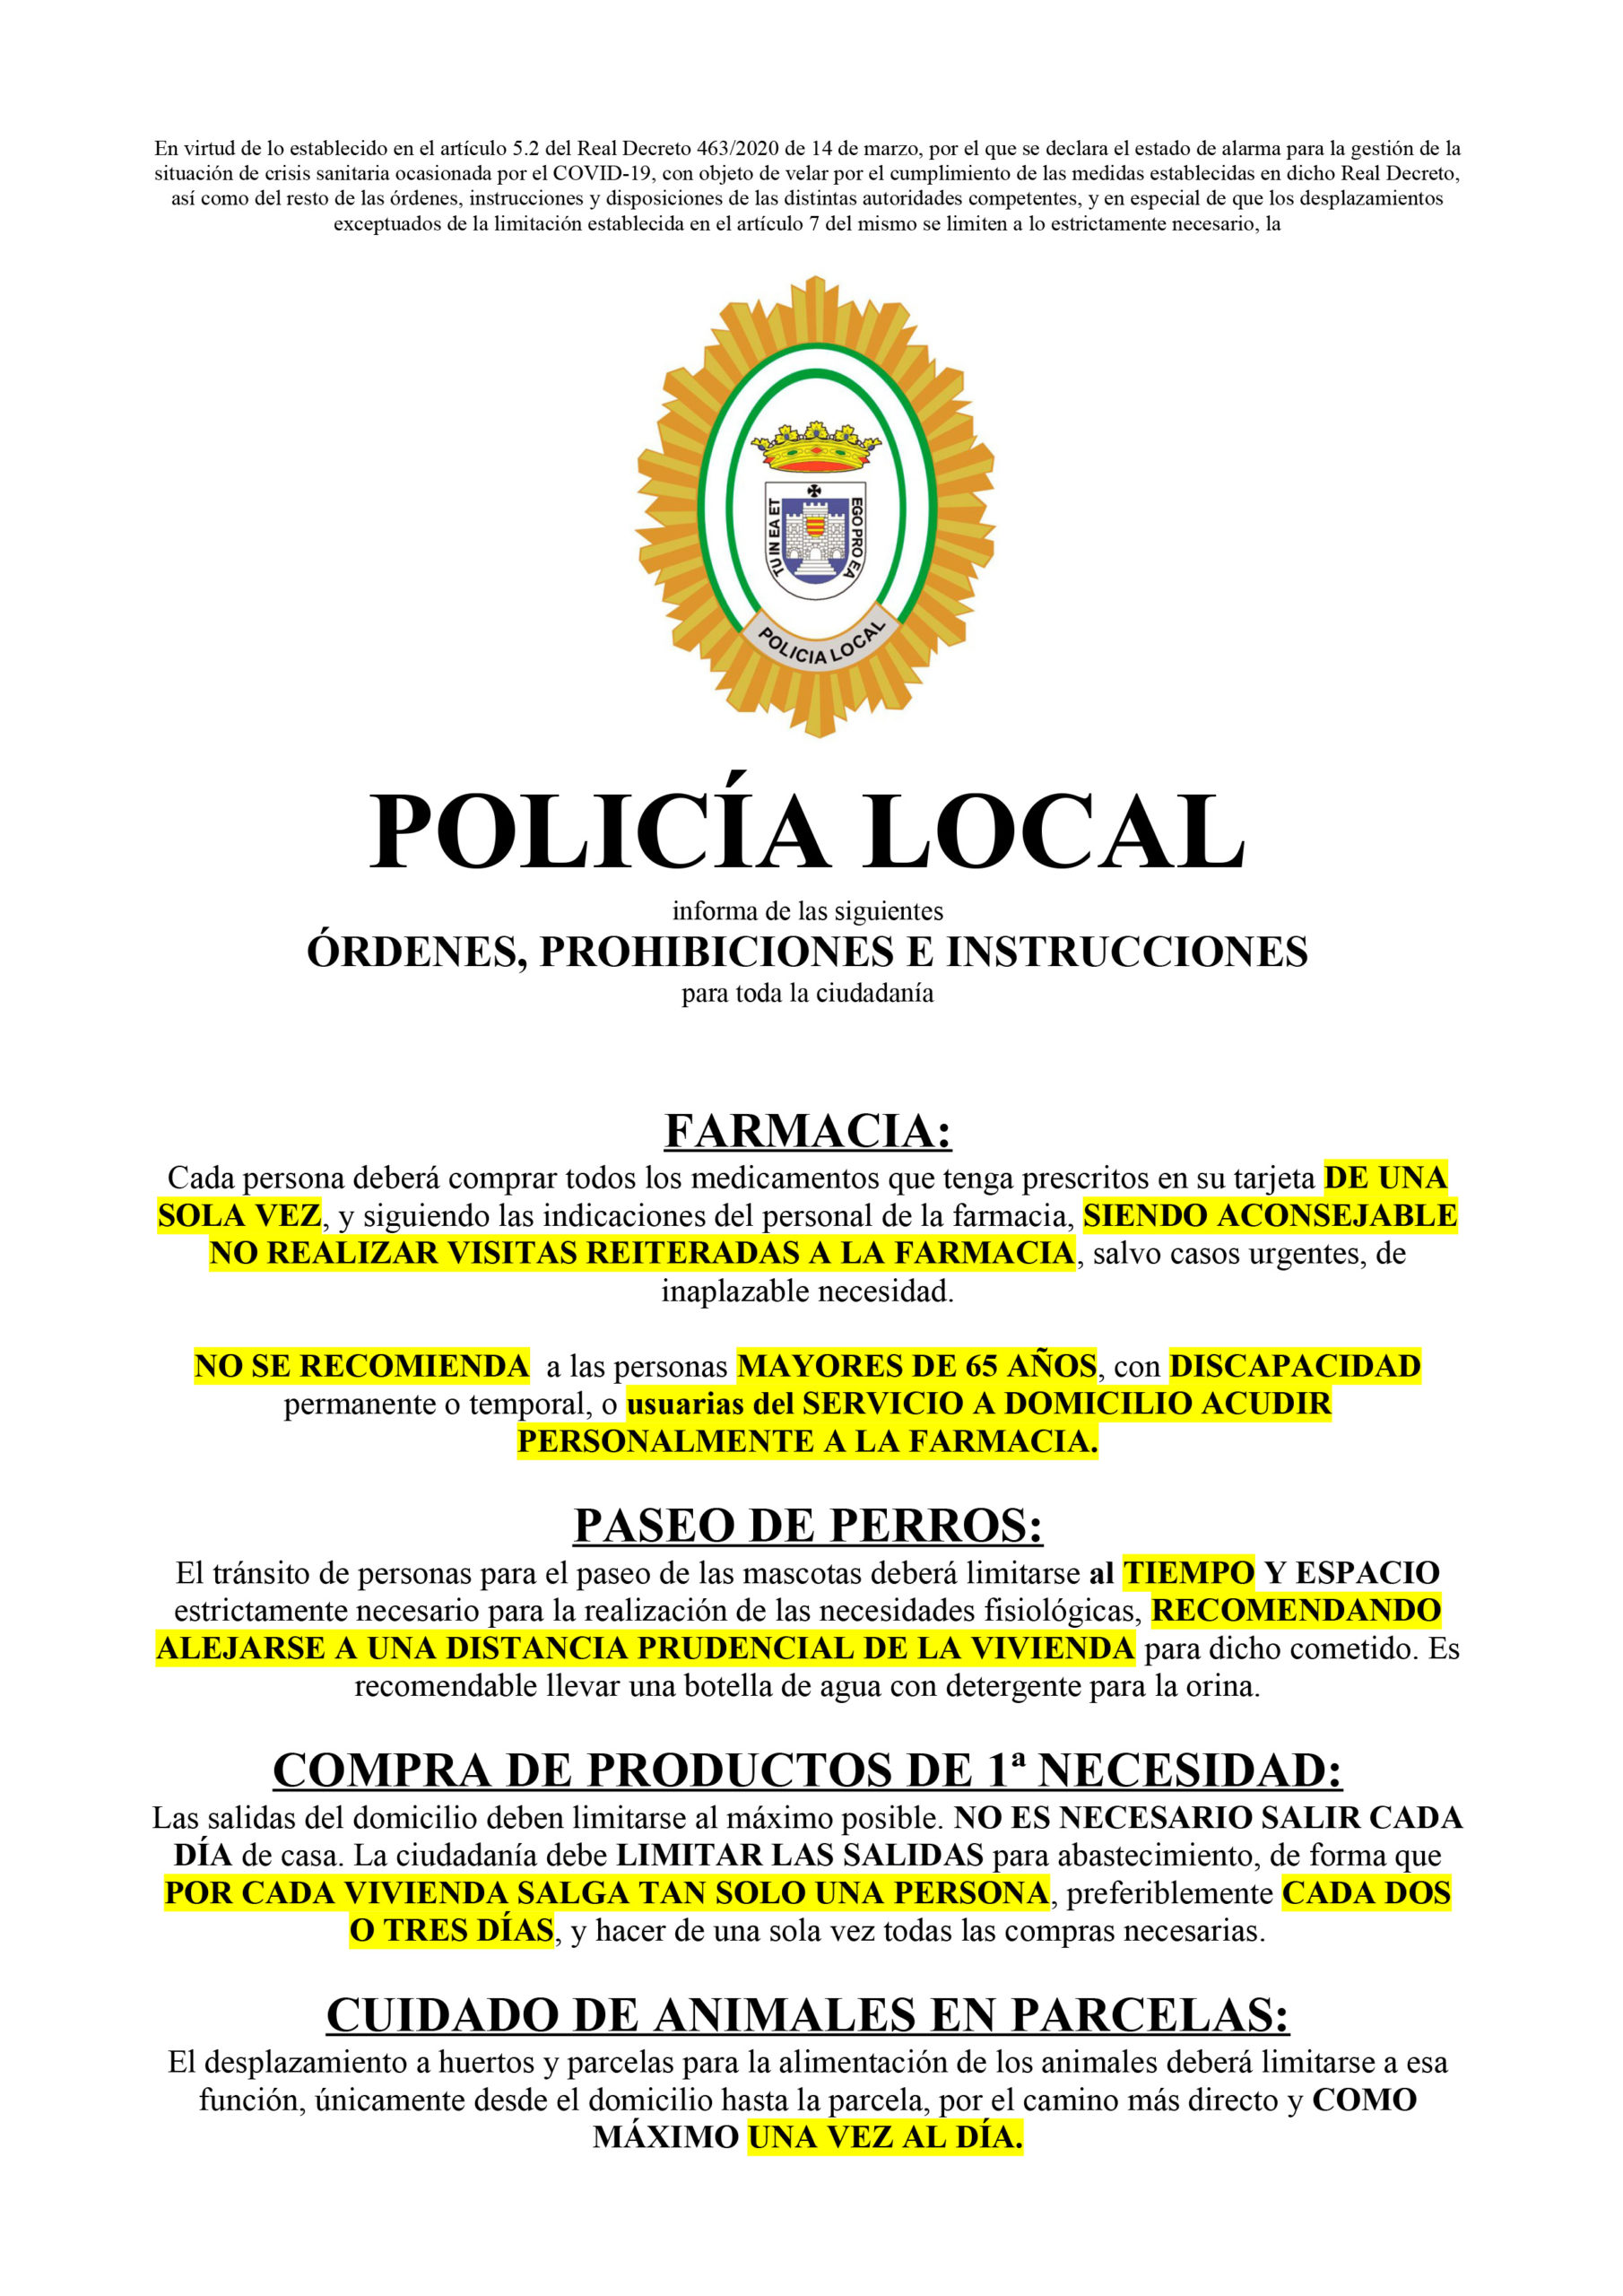 INSTRUCCIONES POLICIA LOCAL SALIDAS DEL HOGAR 1